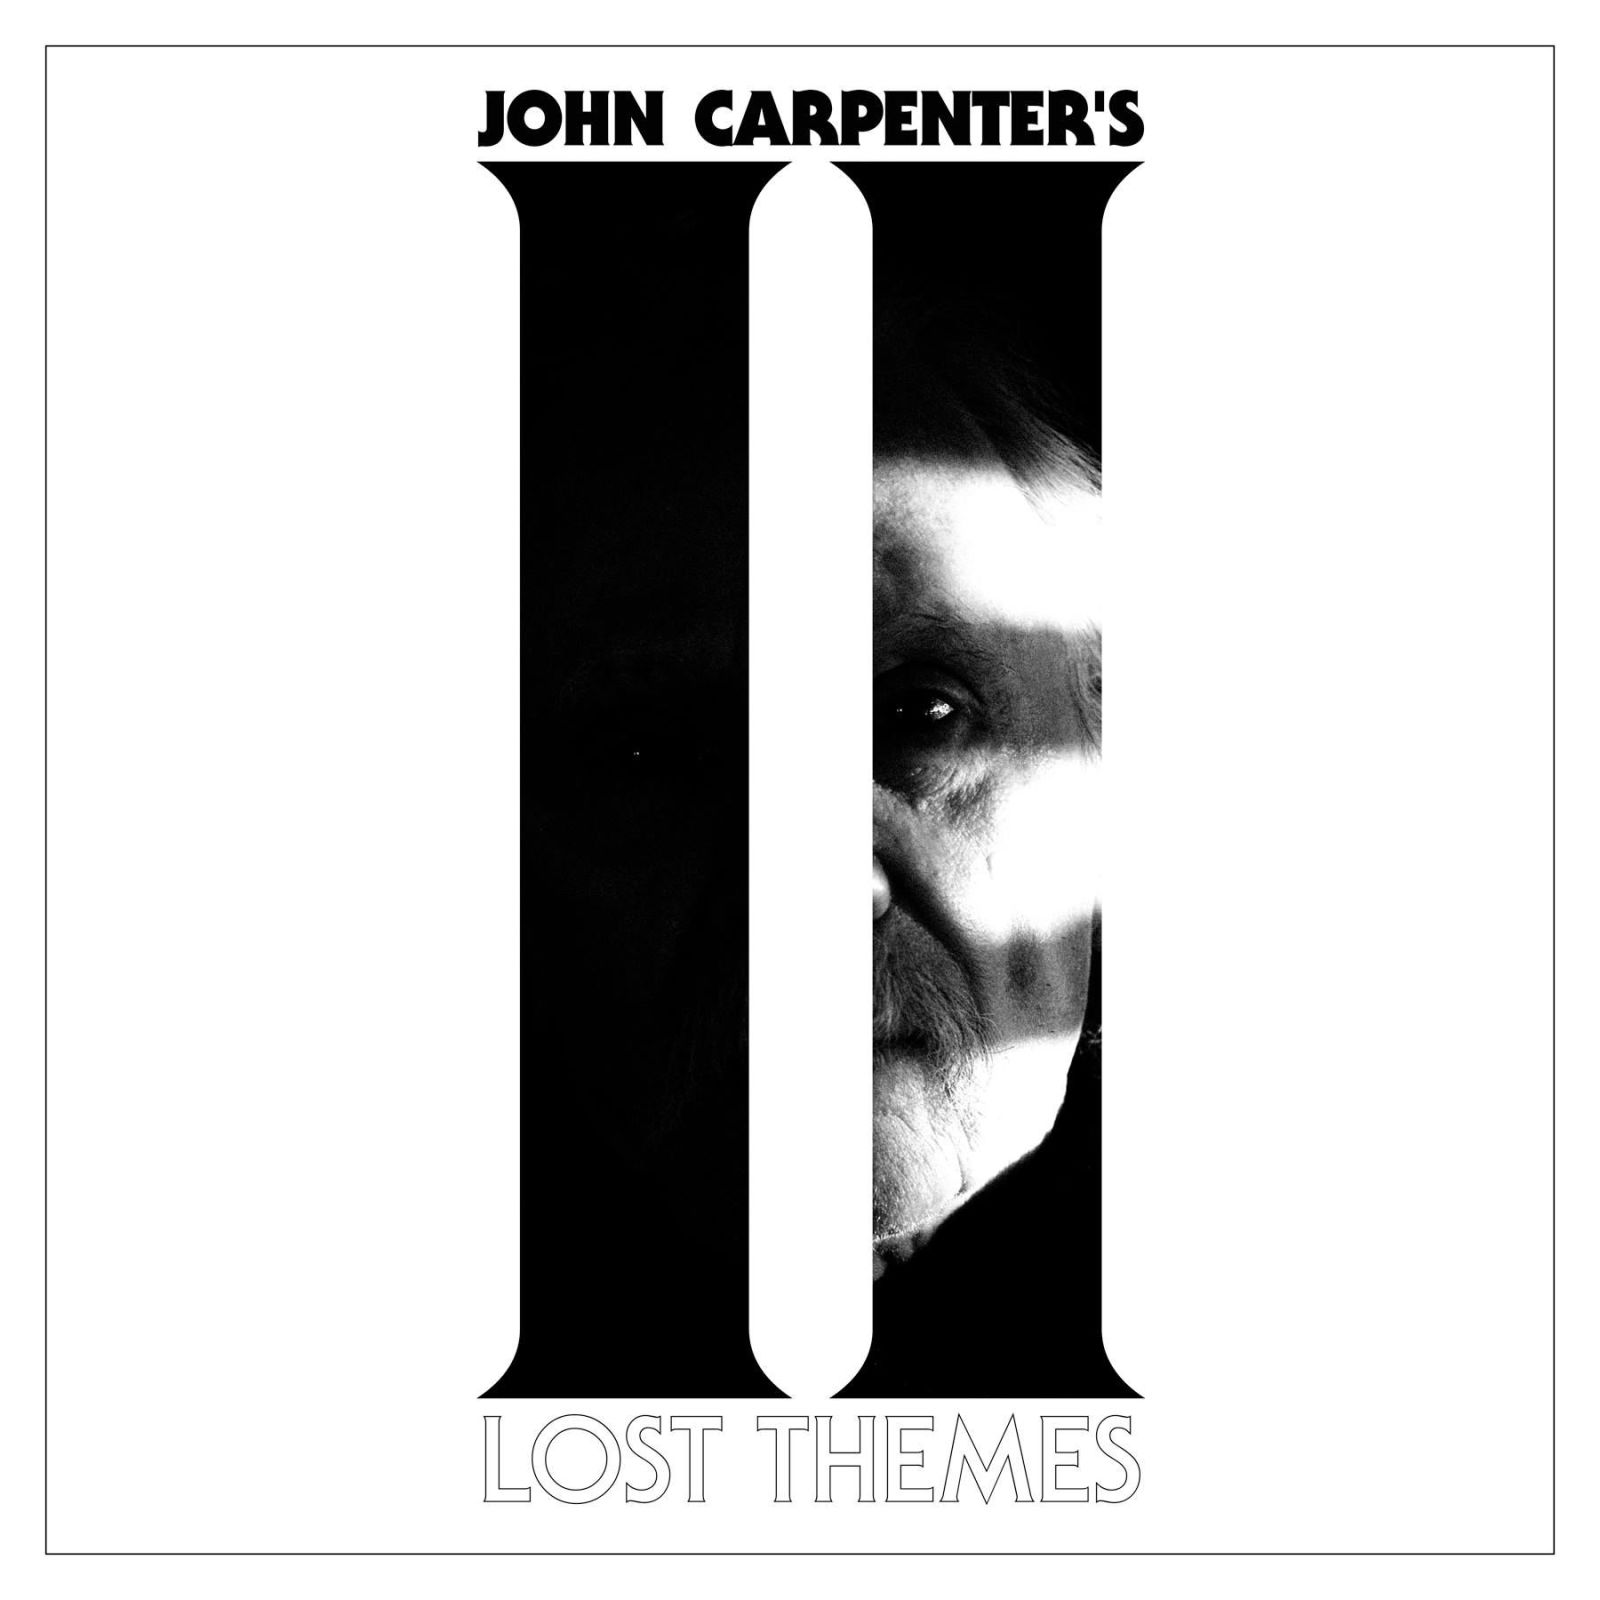 Джон Карпентер скоро выпустит новый музыкальный альбом